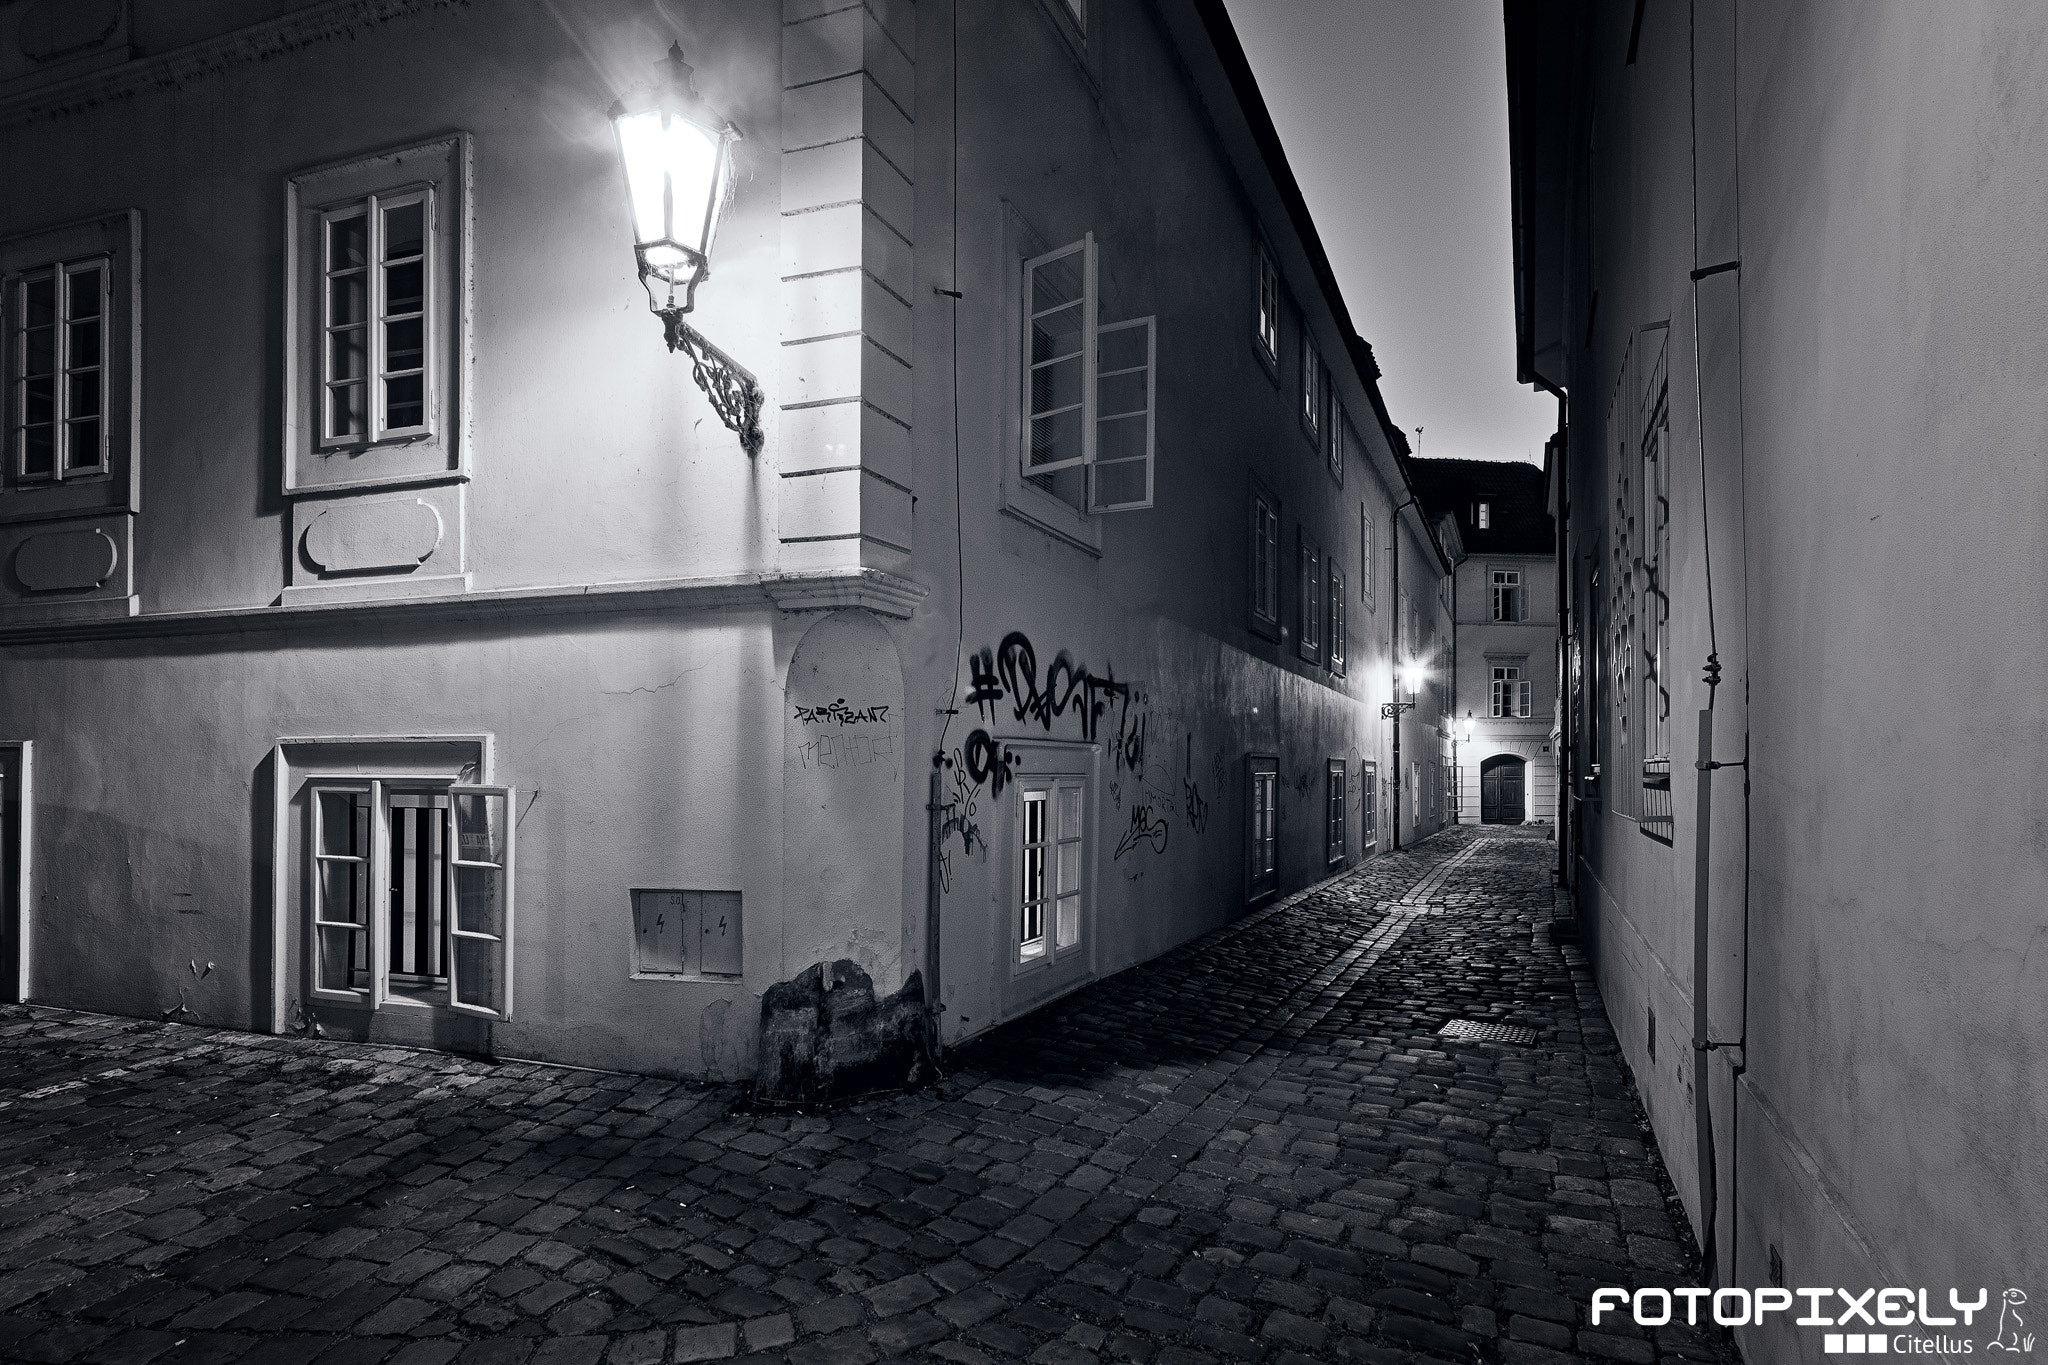 Nikon D600 sample photo. Praha / prague photography